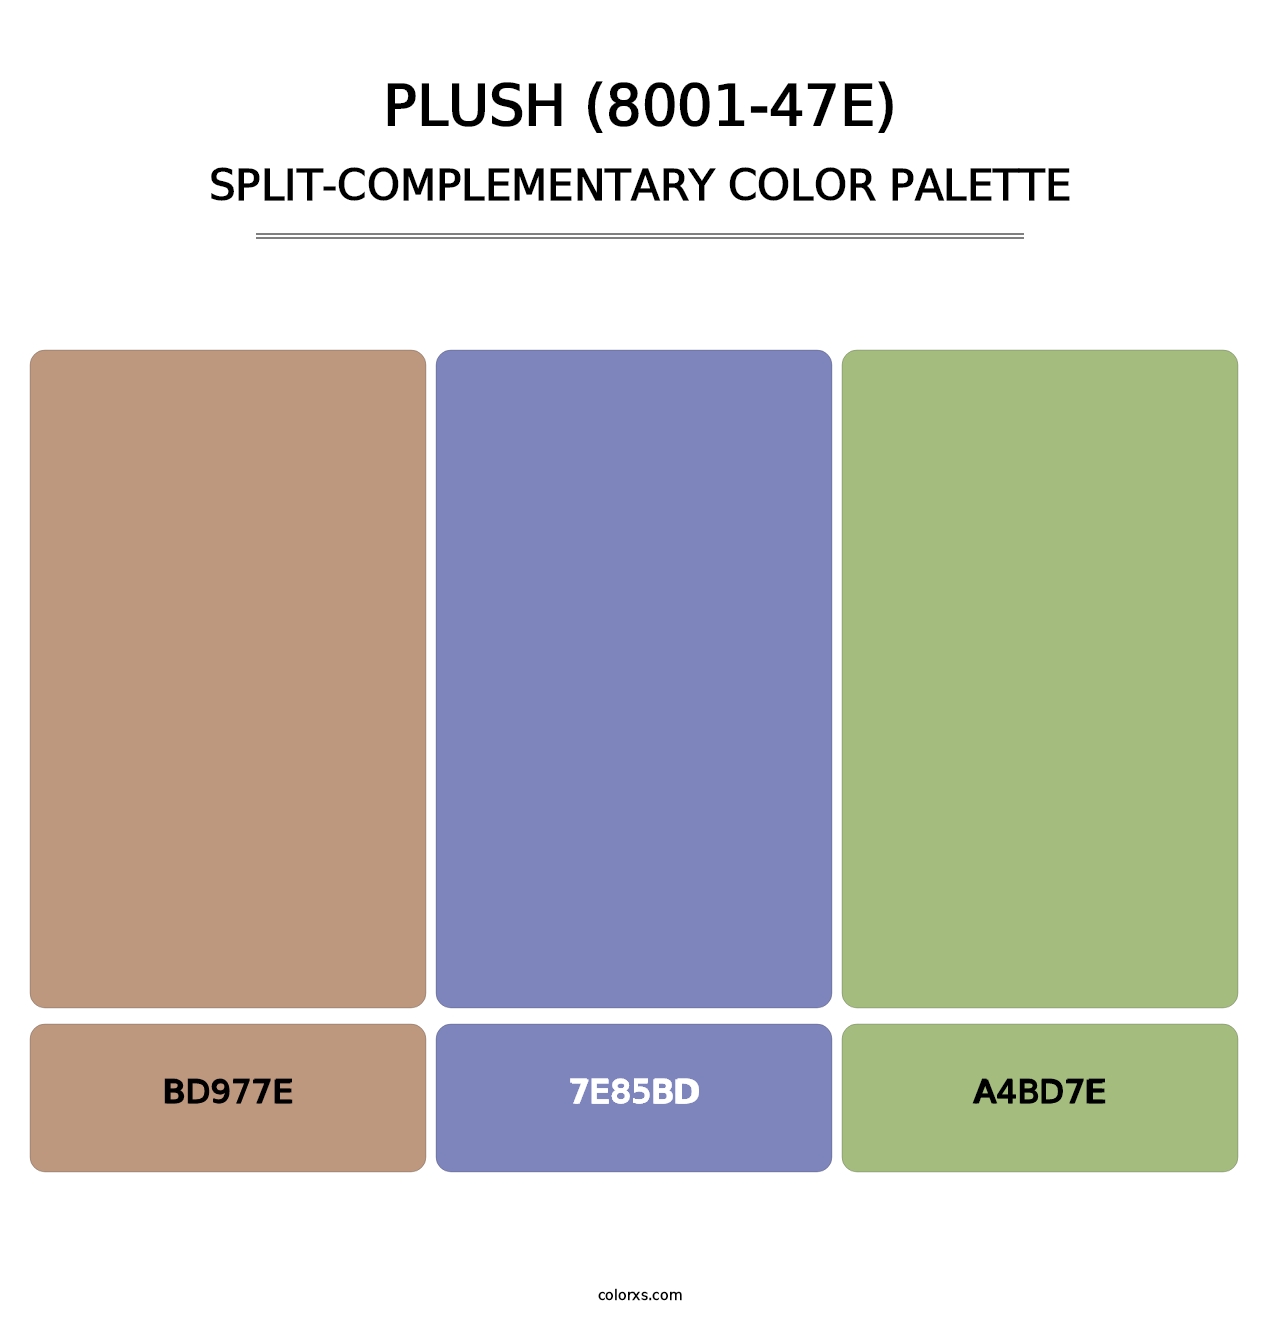 Plush (8001-47E) - Split-Complementary Color Palette